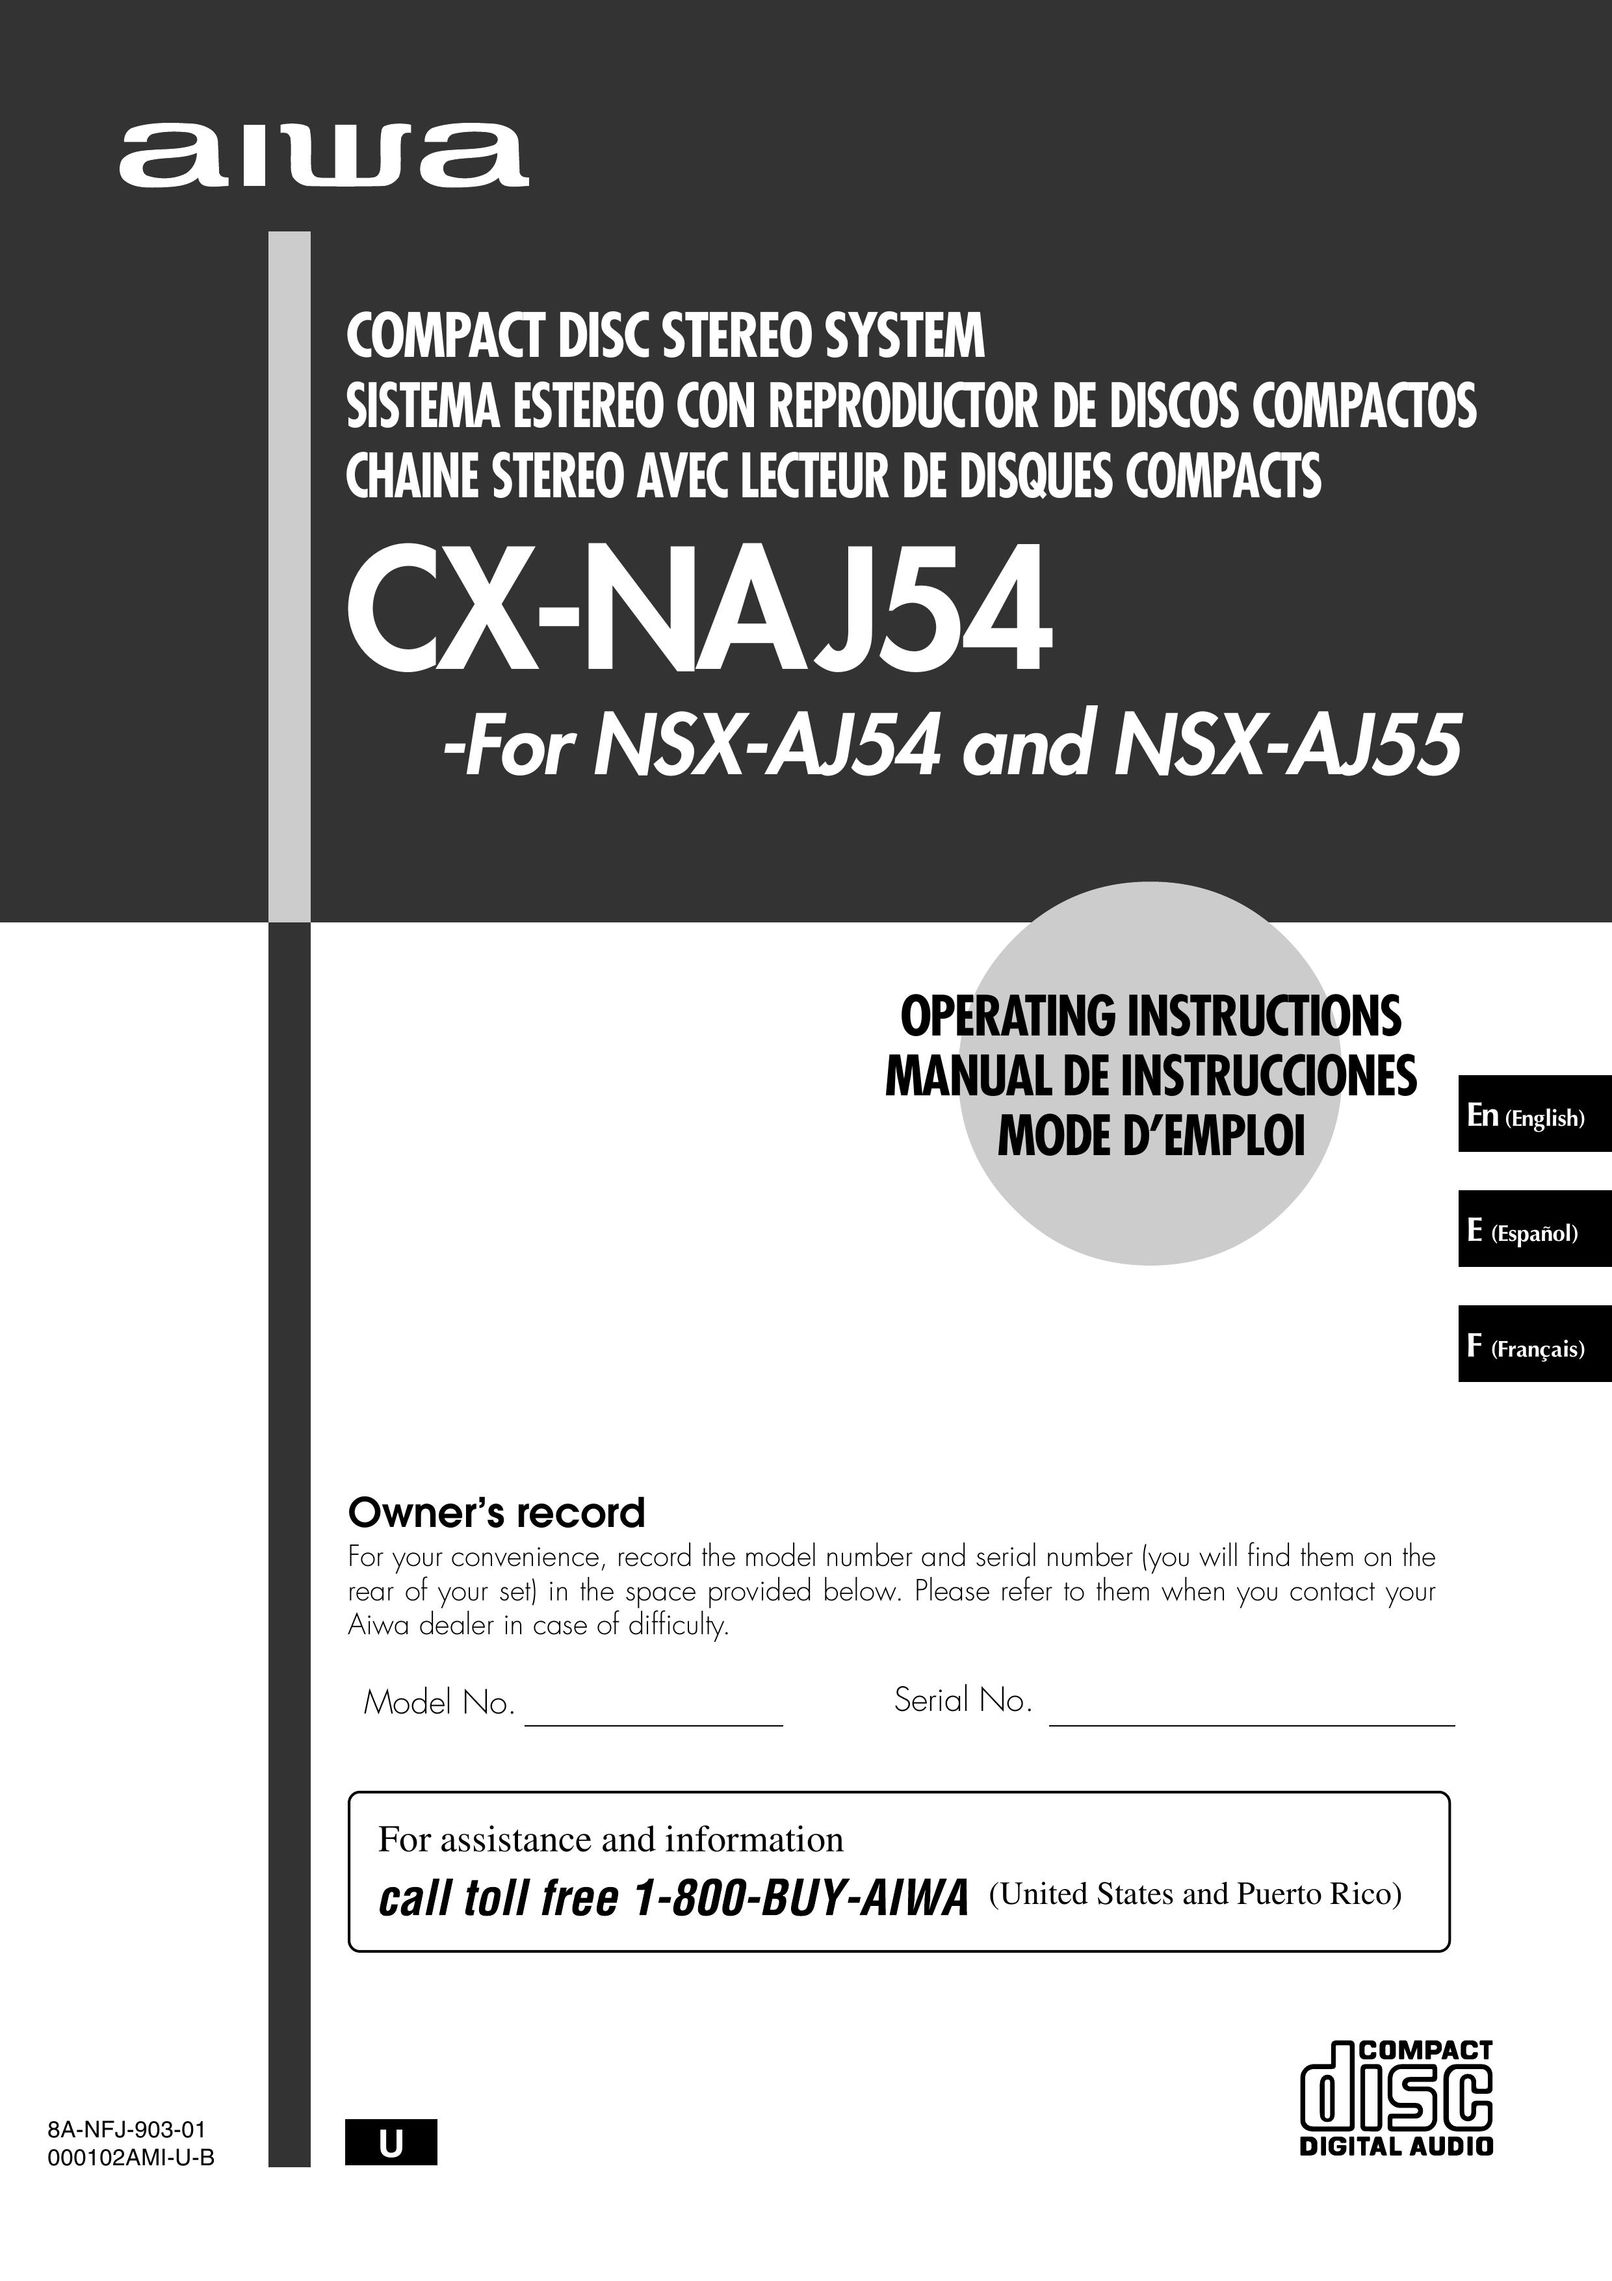 Aiwa CX-NAJ54 CD Player User Manual